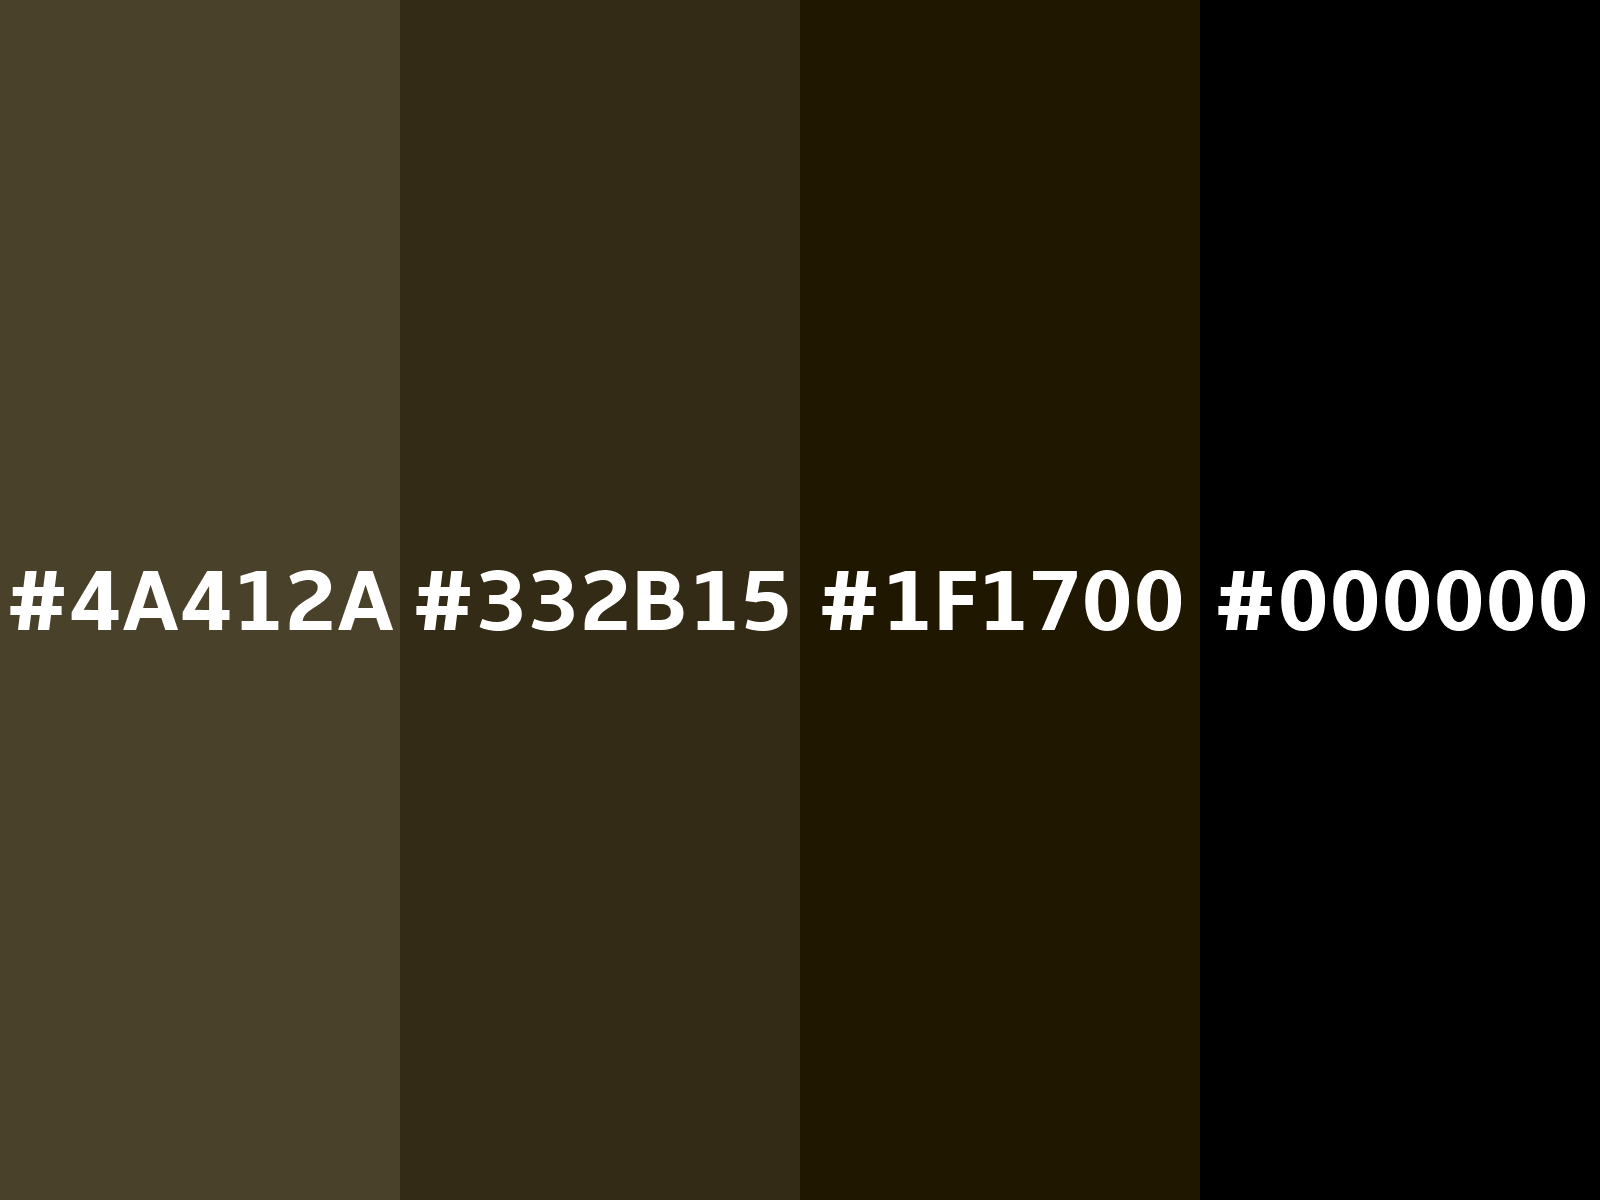 HEX color #4E2A2A, Color name: Espresso, RGB(78,42,42), Windows